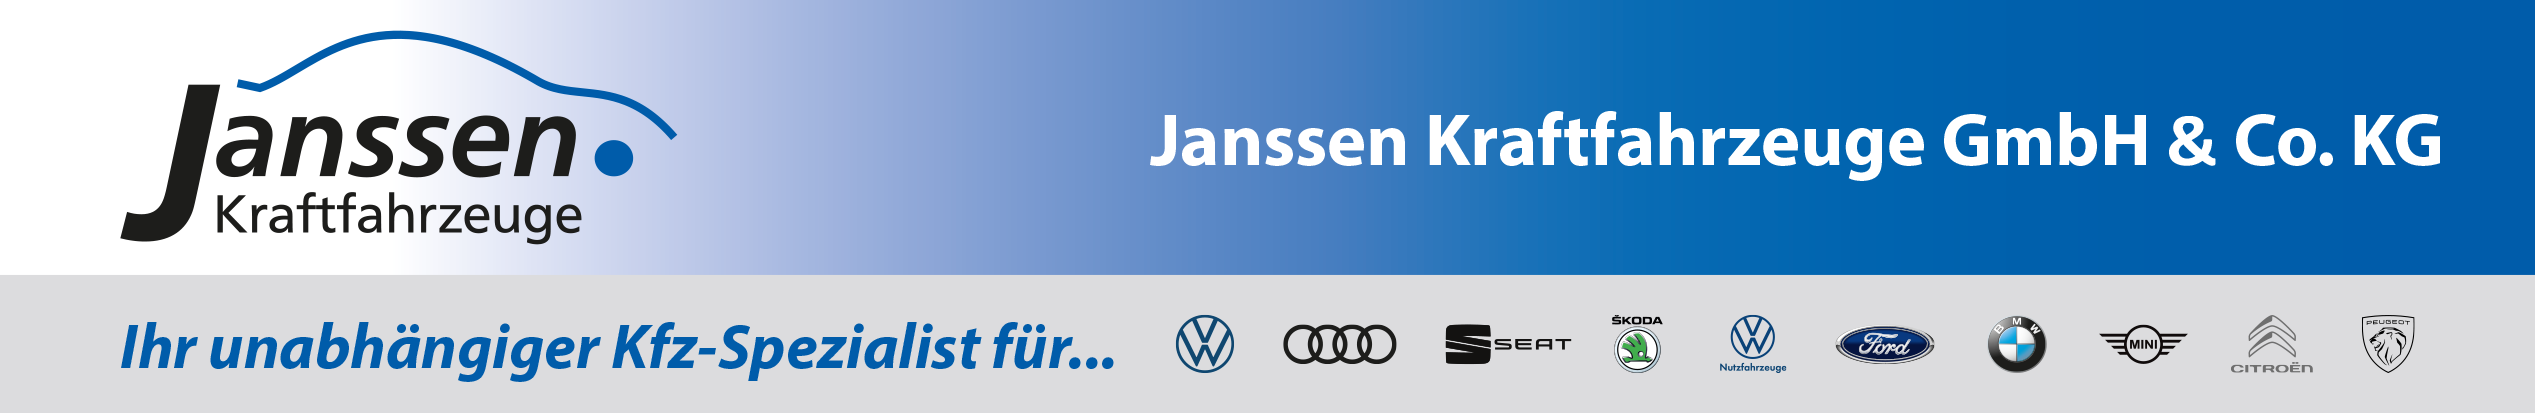 Janssen header 2020